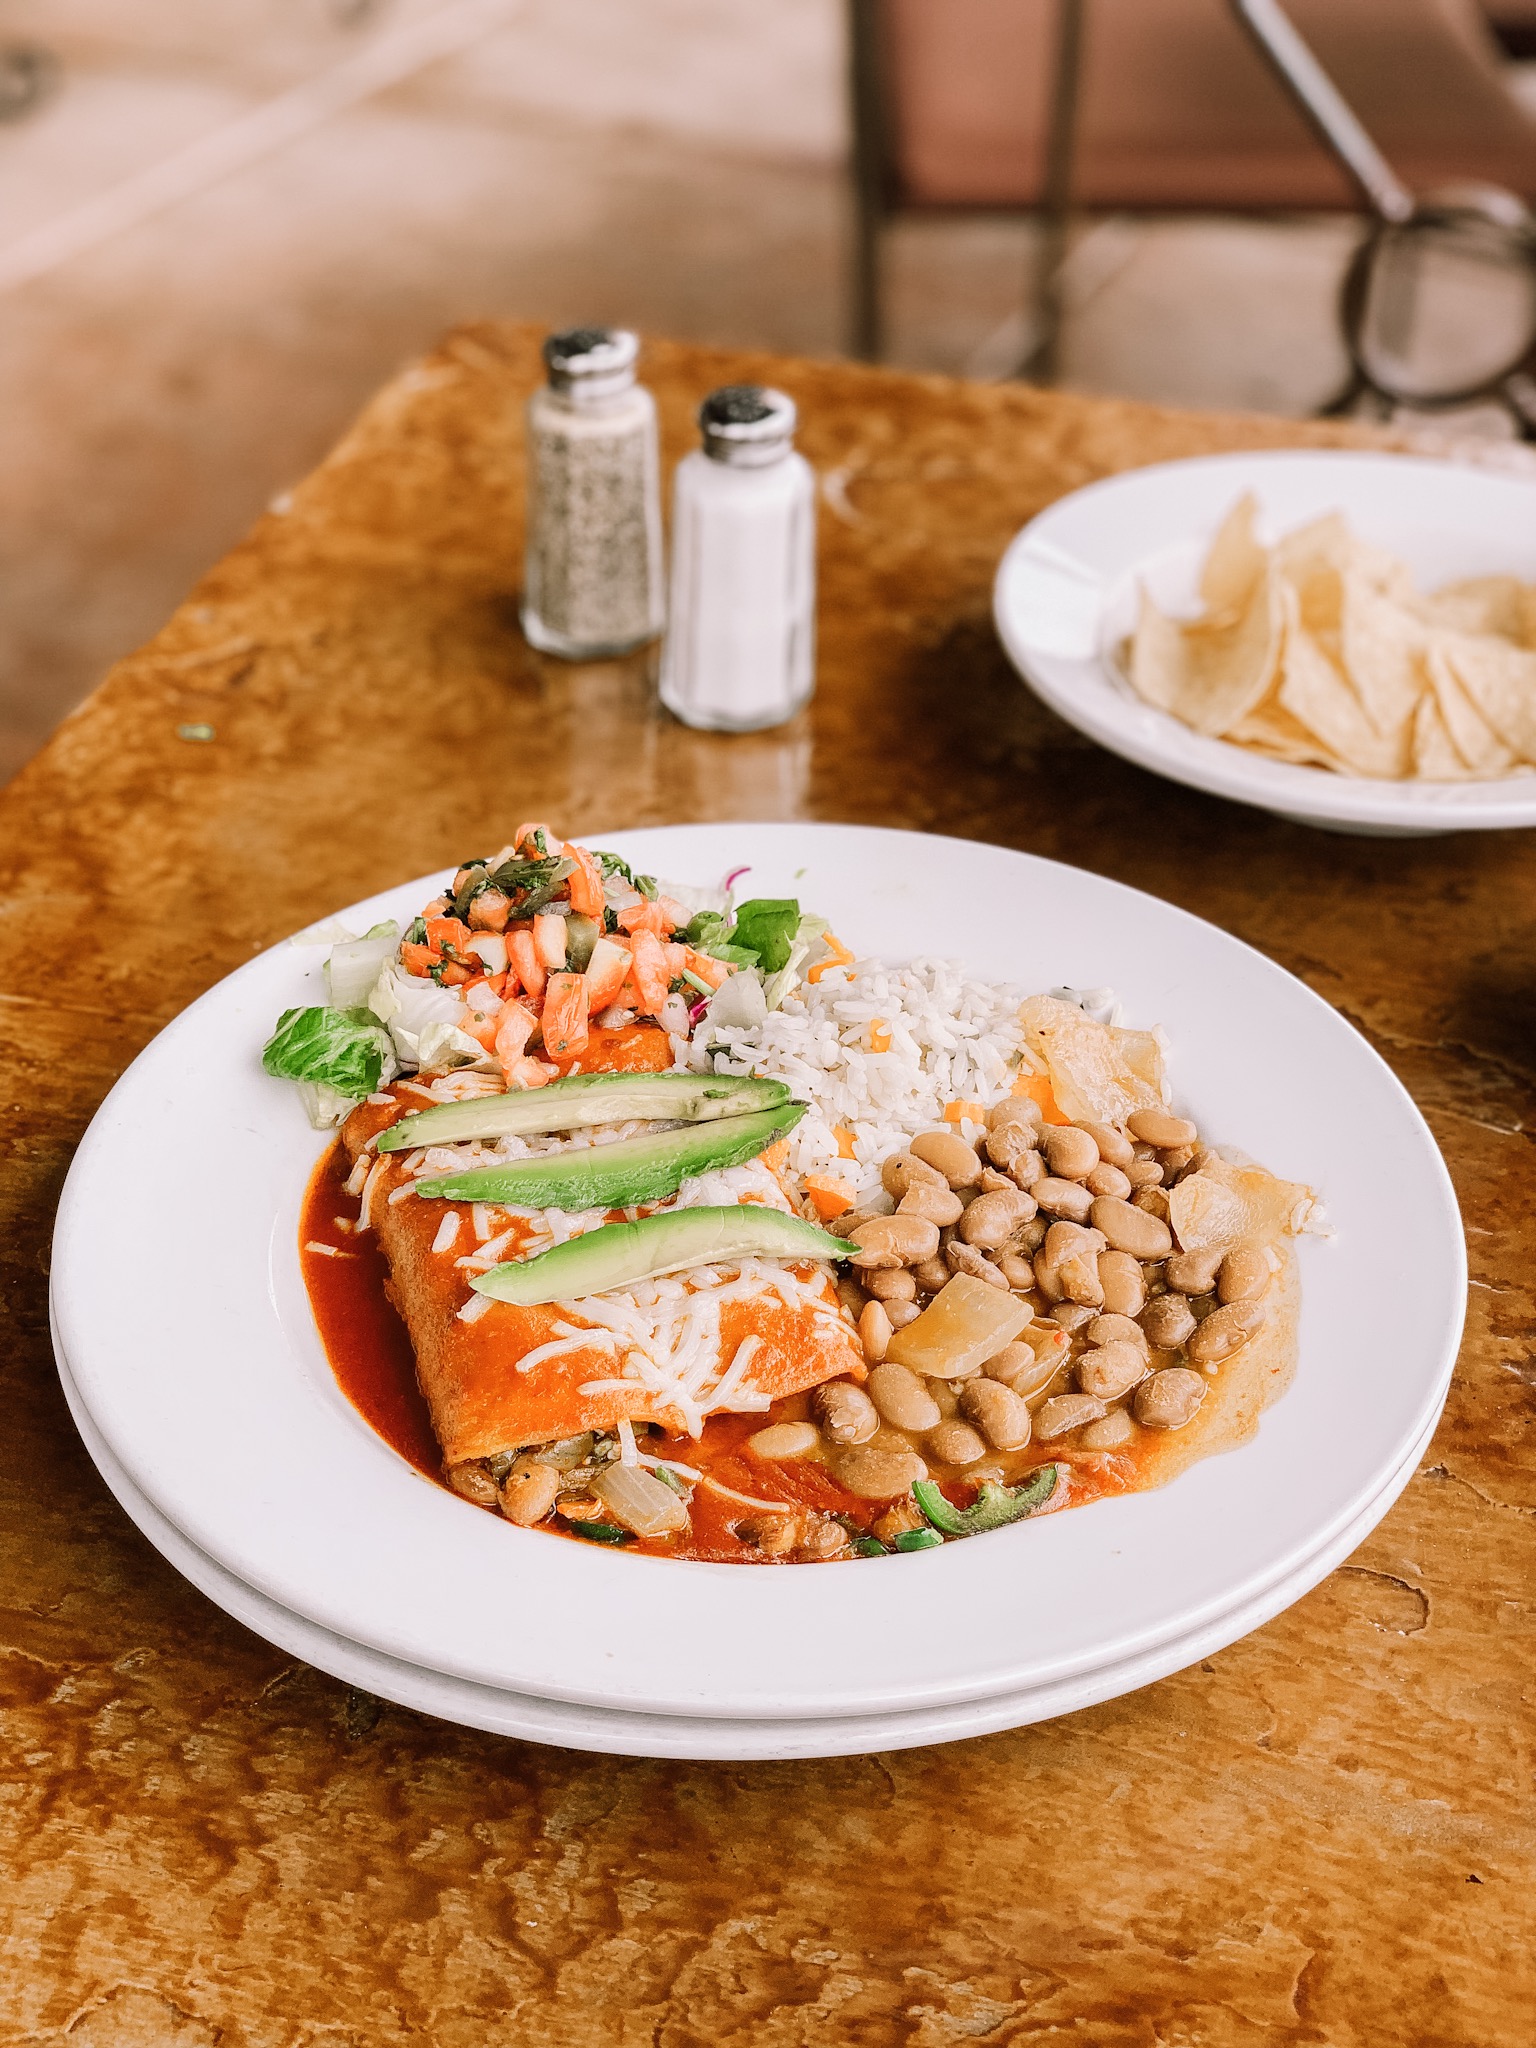 Vegan Nopalito Enchiladas at El Charro Cafe